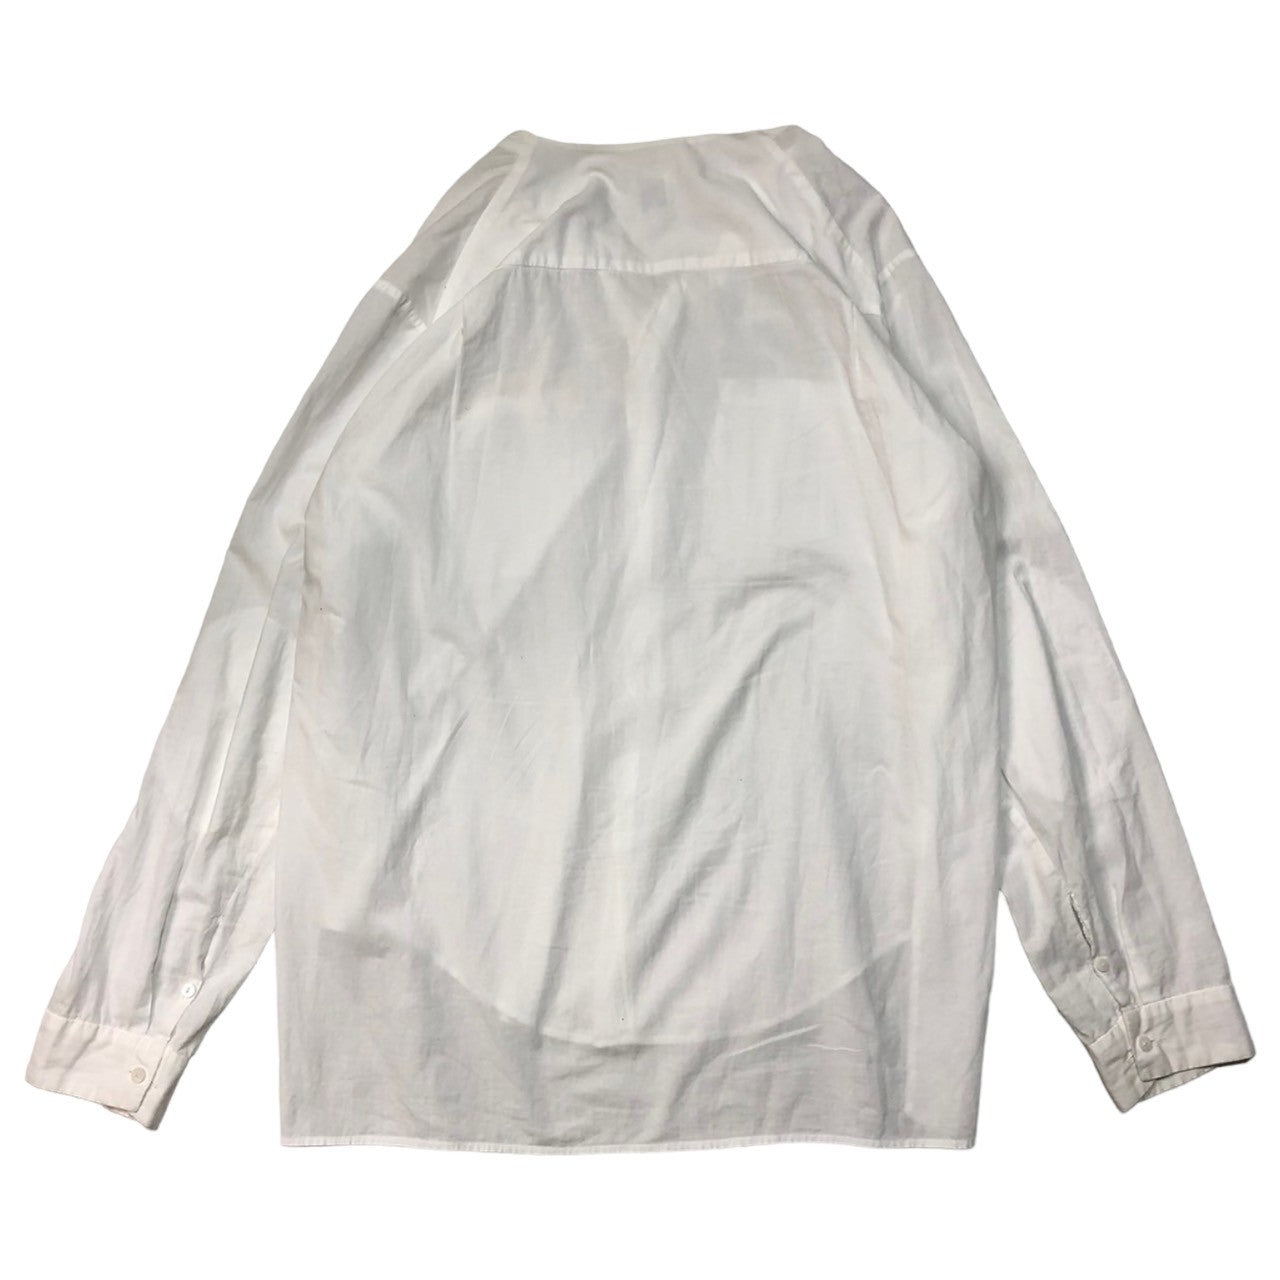 SUNSEA(サンシー) 17SS Exploration Shirt エクスプロージョン シャツ 17S14 SIZE 3(L) ホワイト